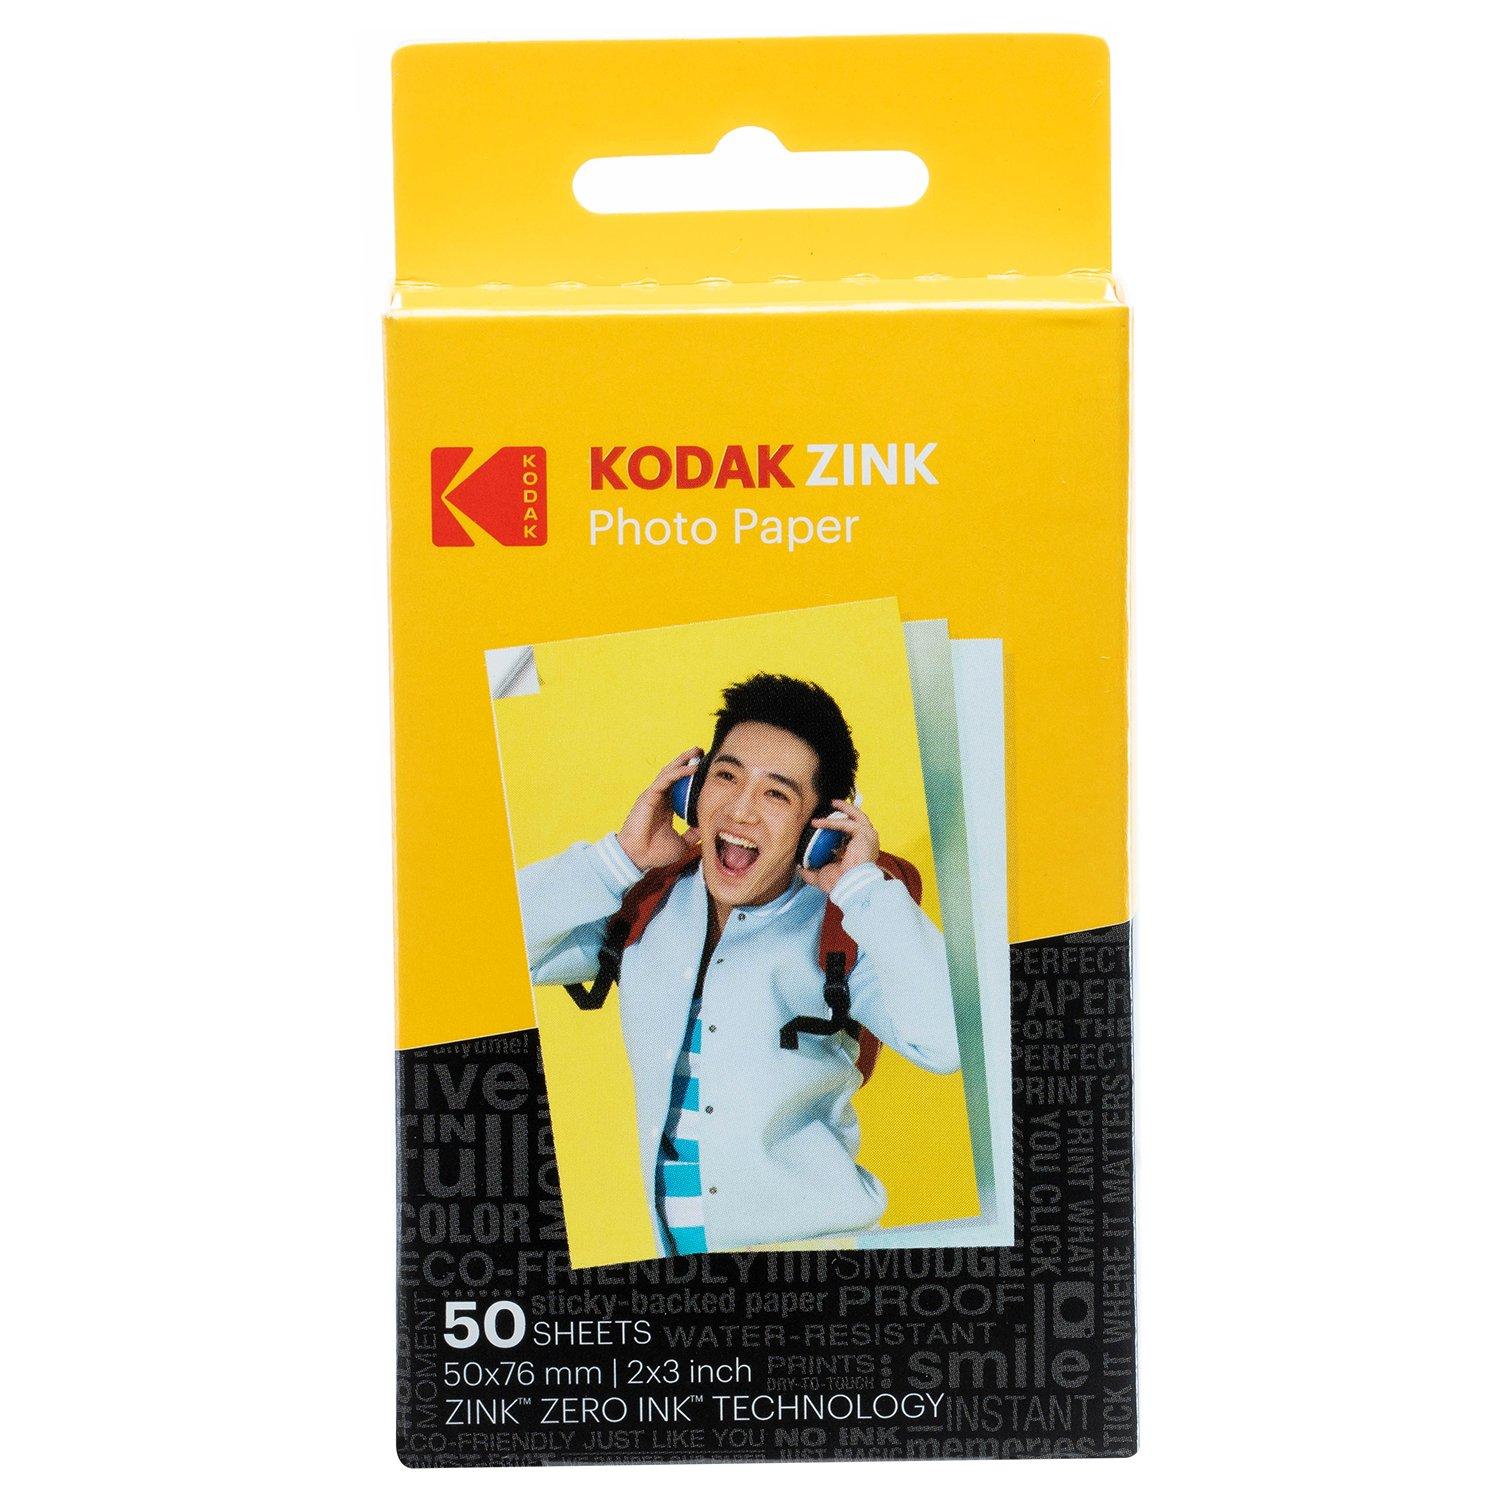 Kodak Zink Photo Paper 2x3 50-pk